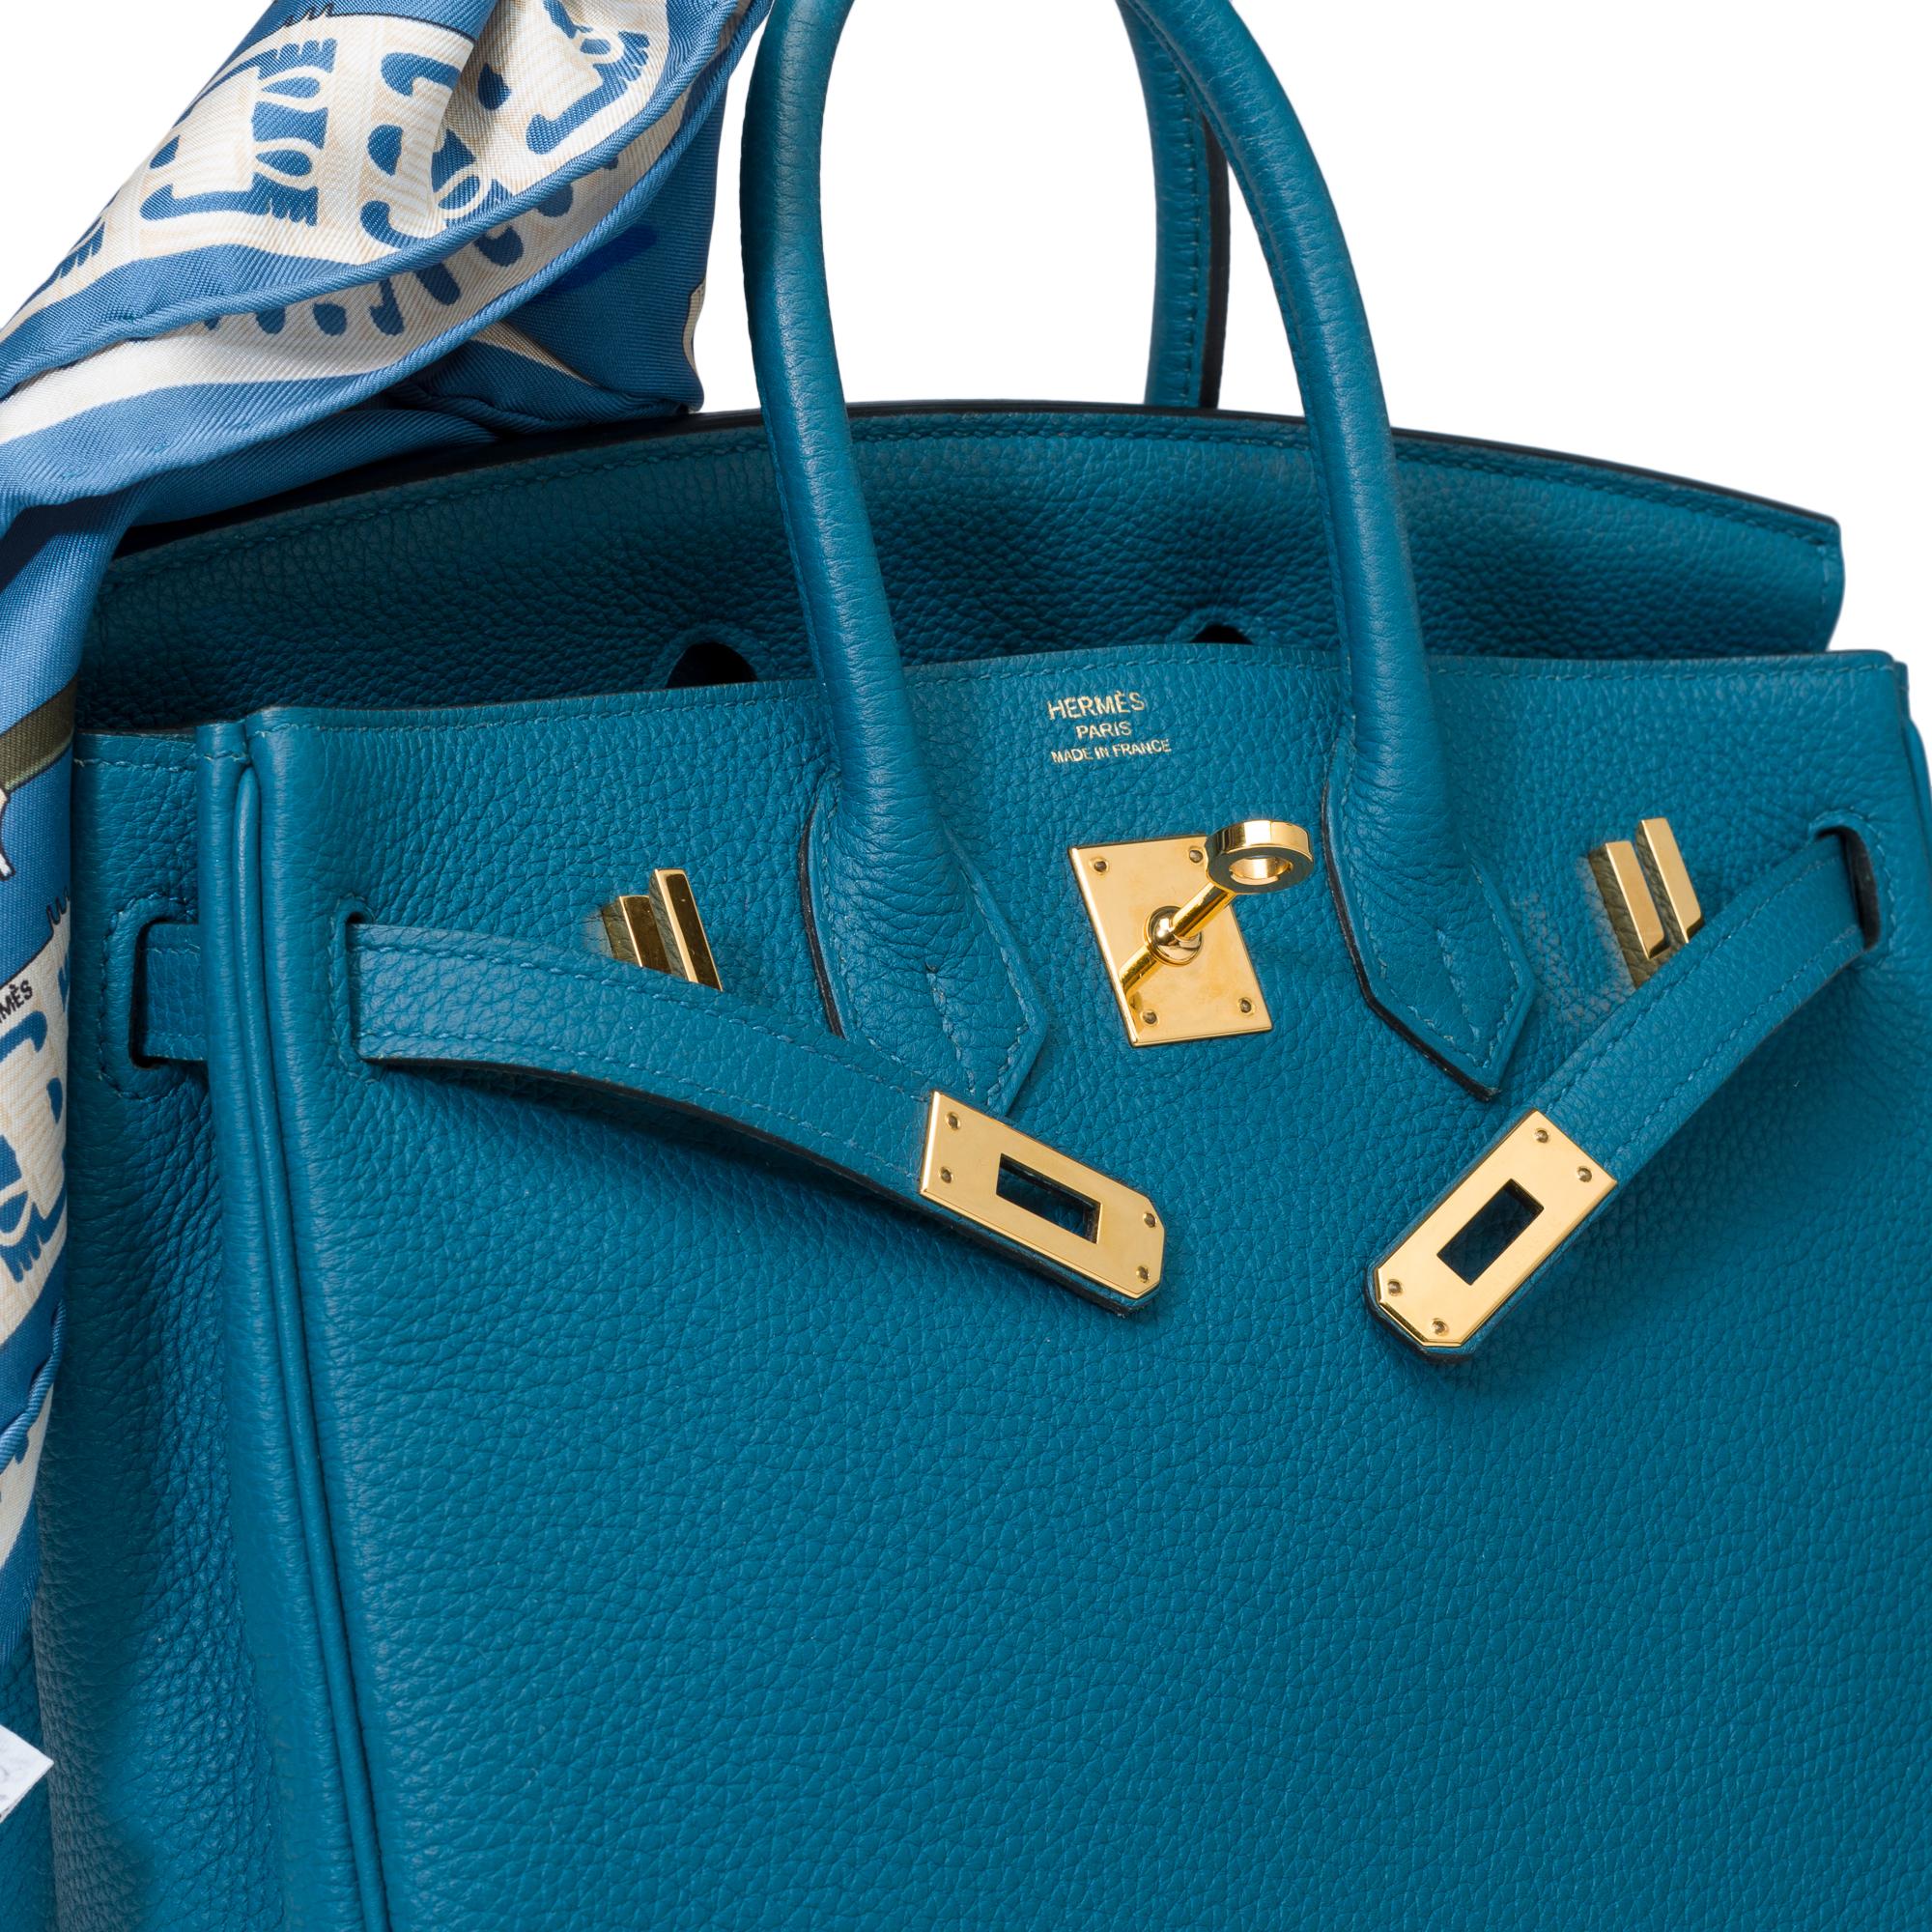 Amazing Hermes Birkin 25cm handbag in Togo Blue Cobalt leather, GHW For Sale 4